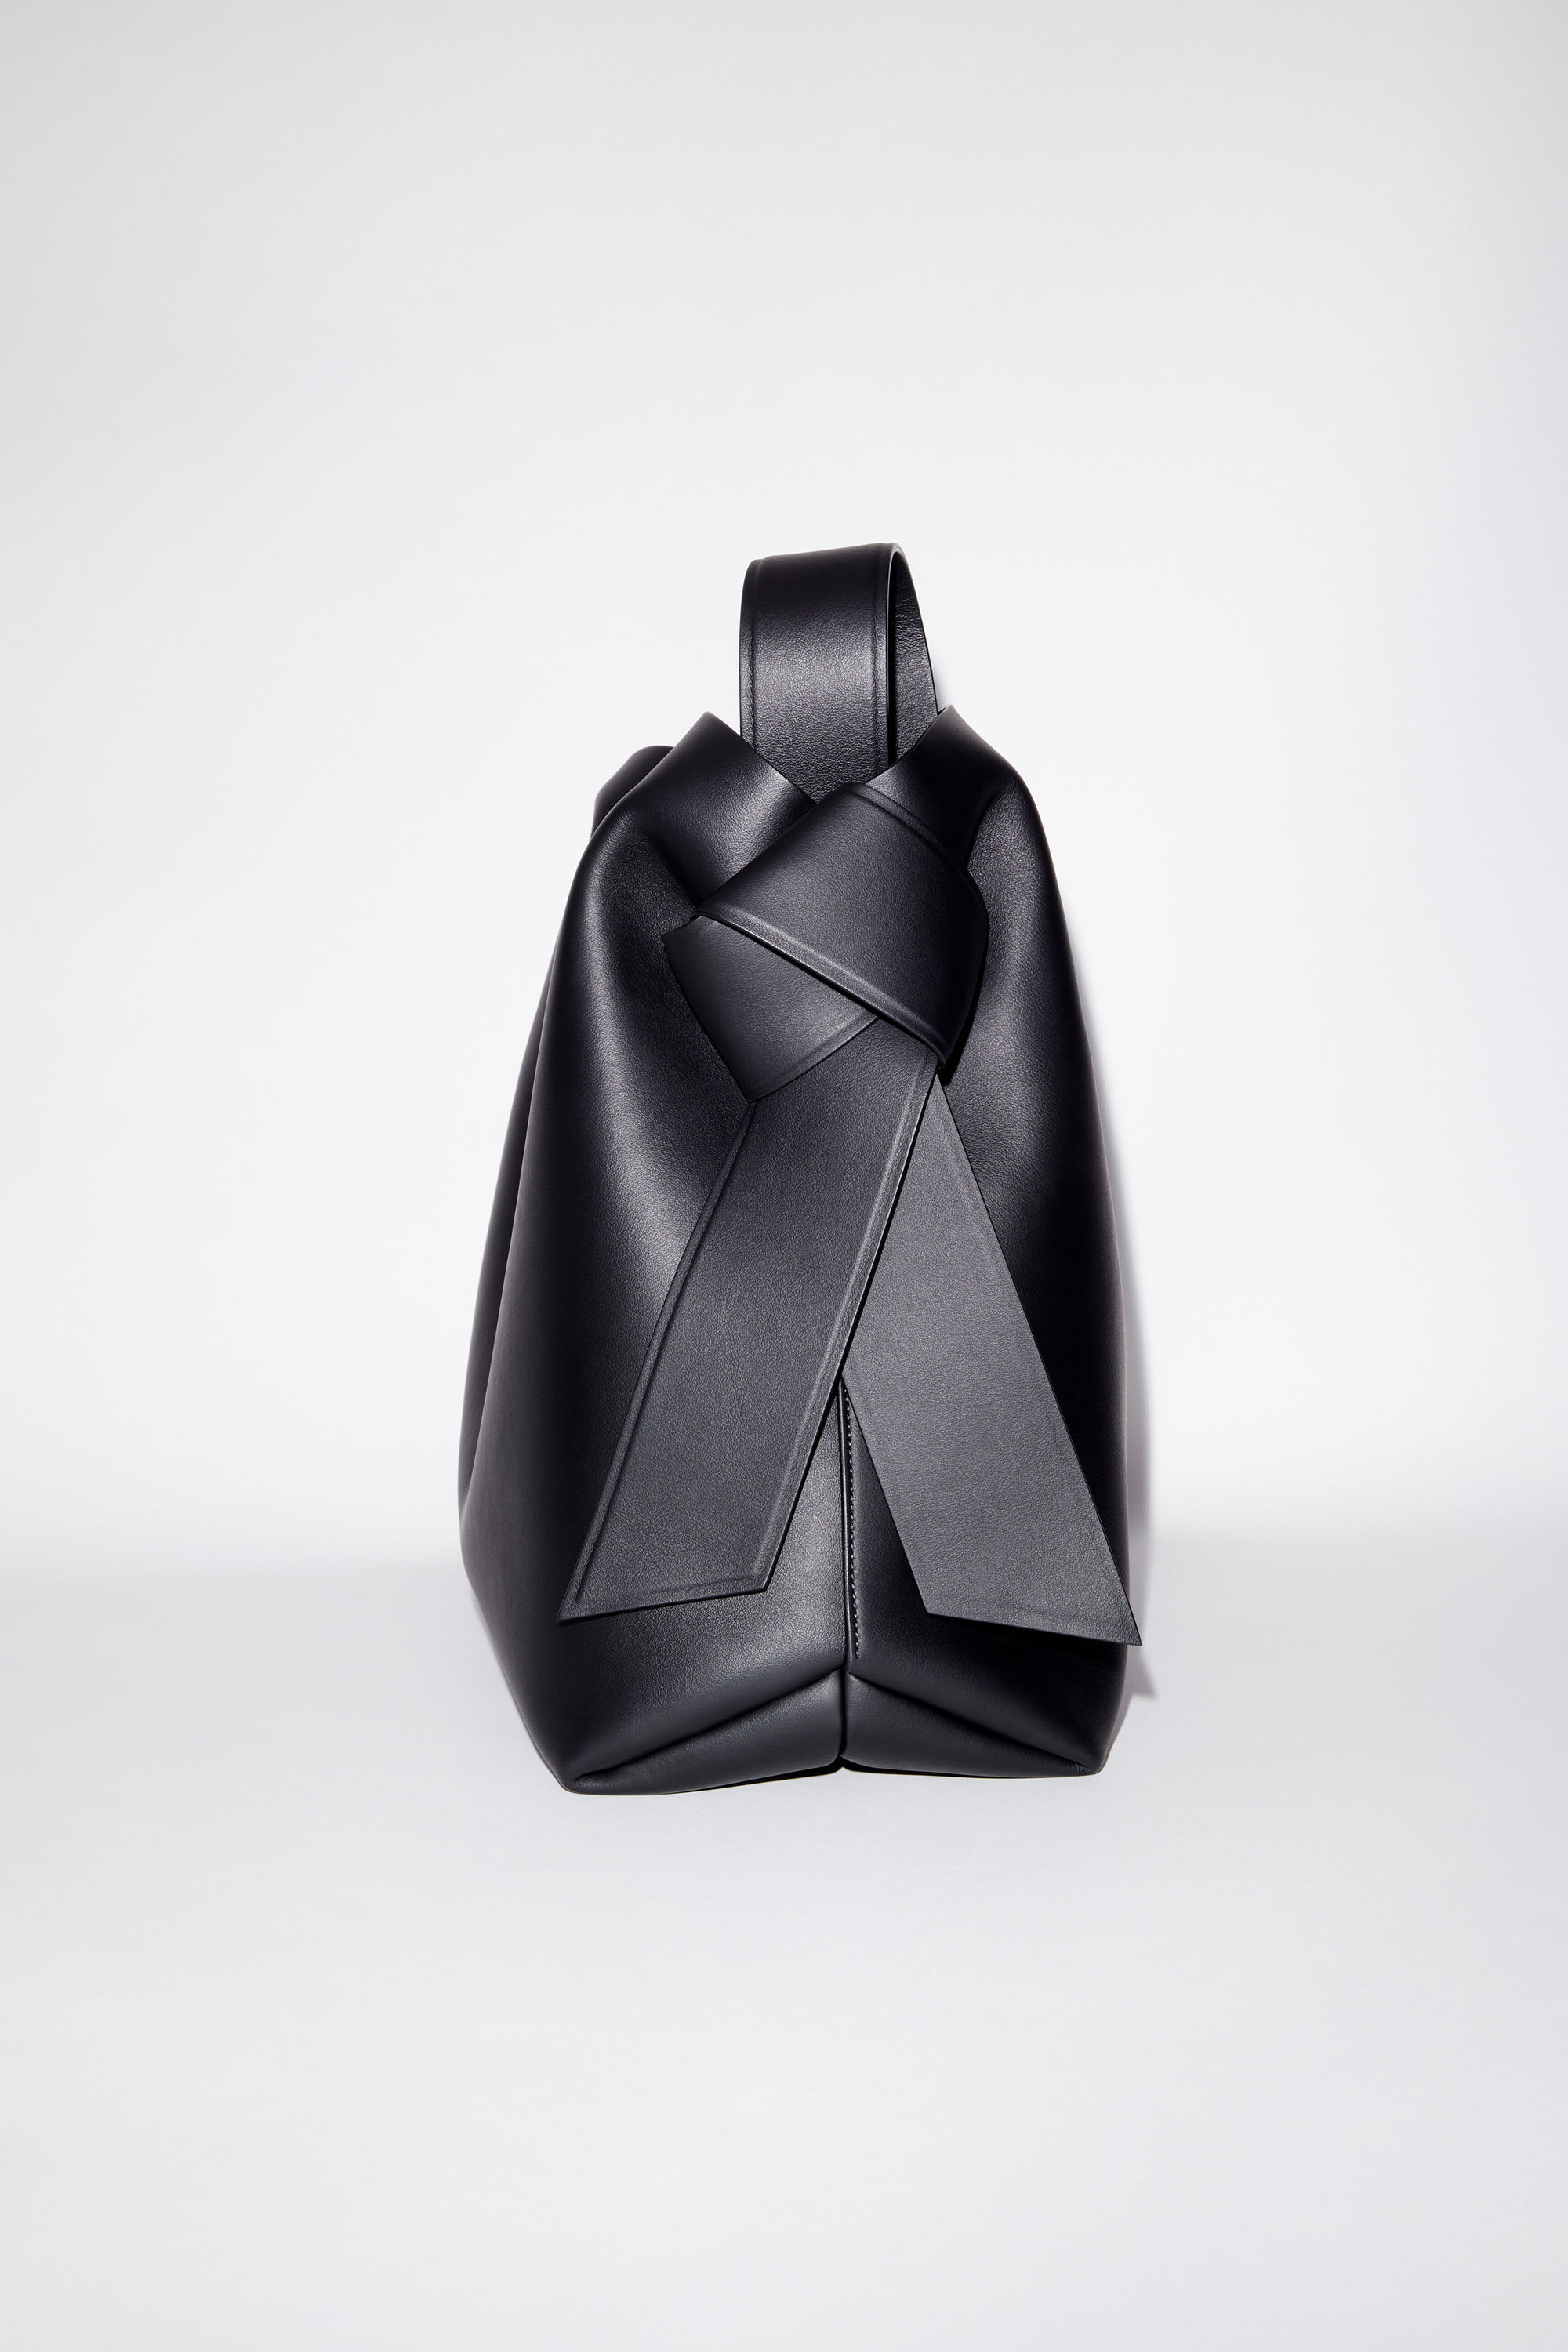 Acne Studios - Musubi maxi shoulder bag - Black